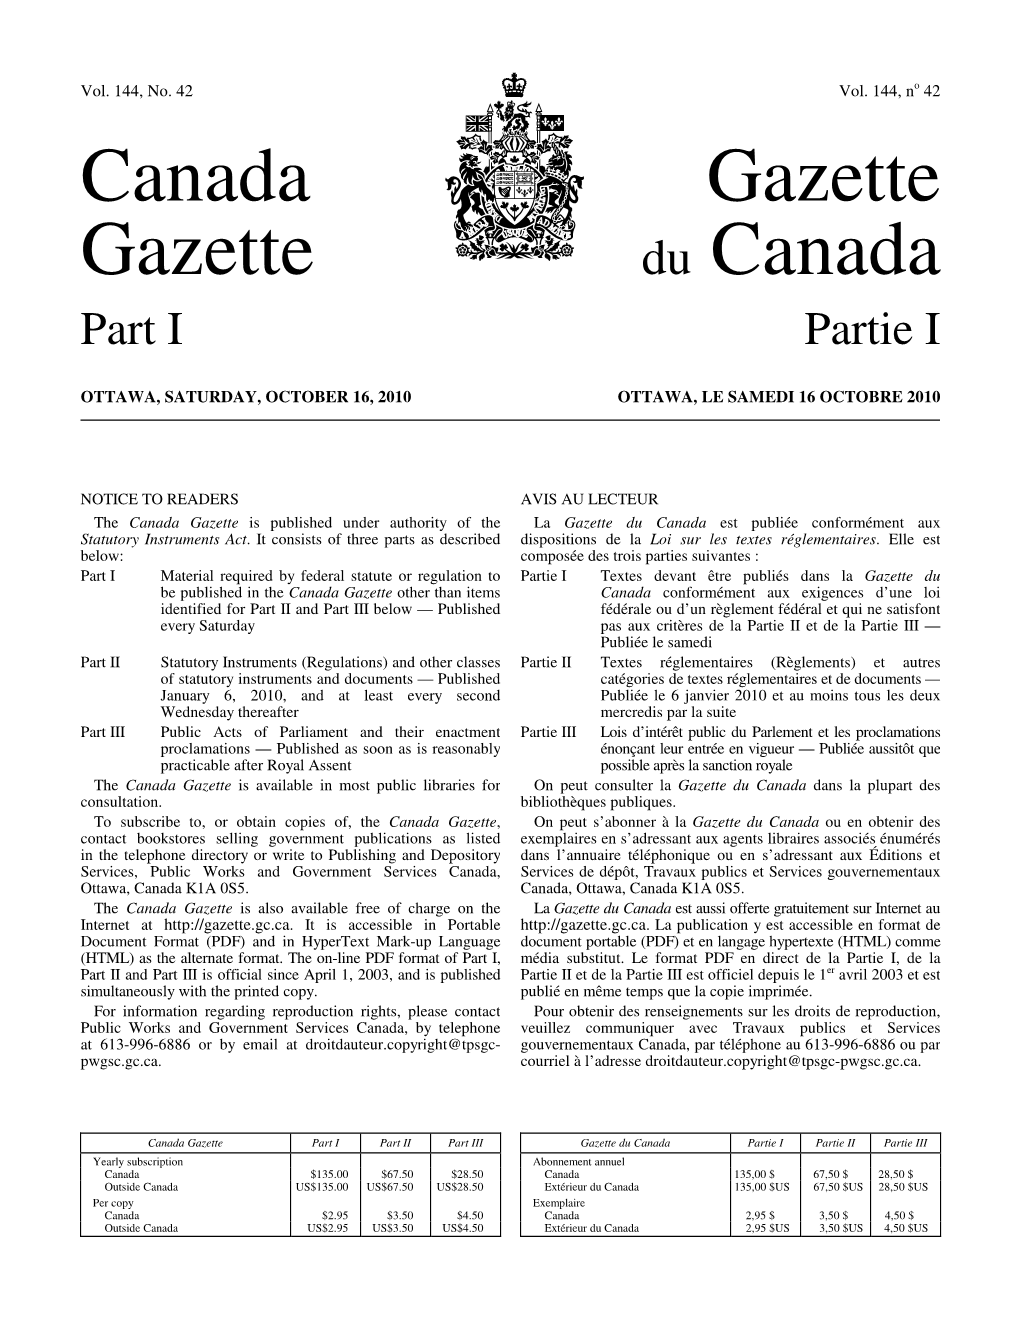 Canada Gazette, Part I, on December 4, 2004